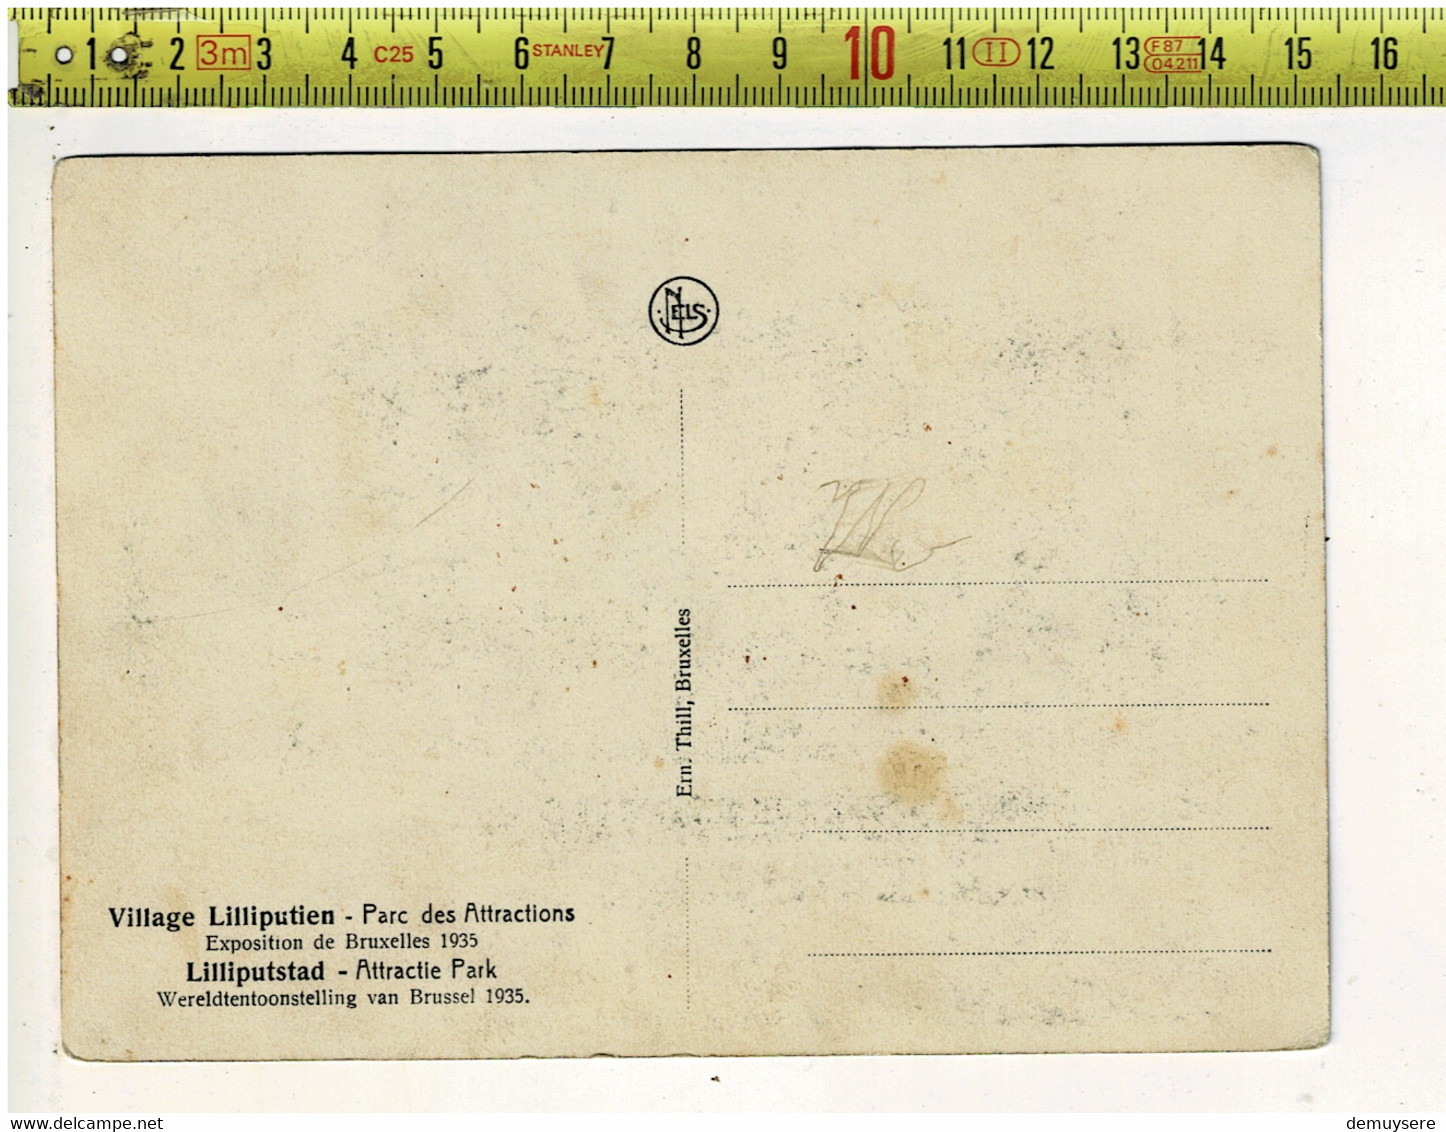 61900 - VILLAGE LILLIPUTIEN PARC DES ATTRACTIONS - LILLIPUTSTAD ATTRACTIE PARK 1935 - Publicité